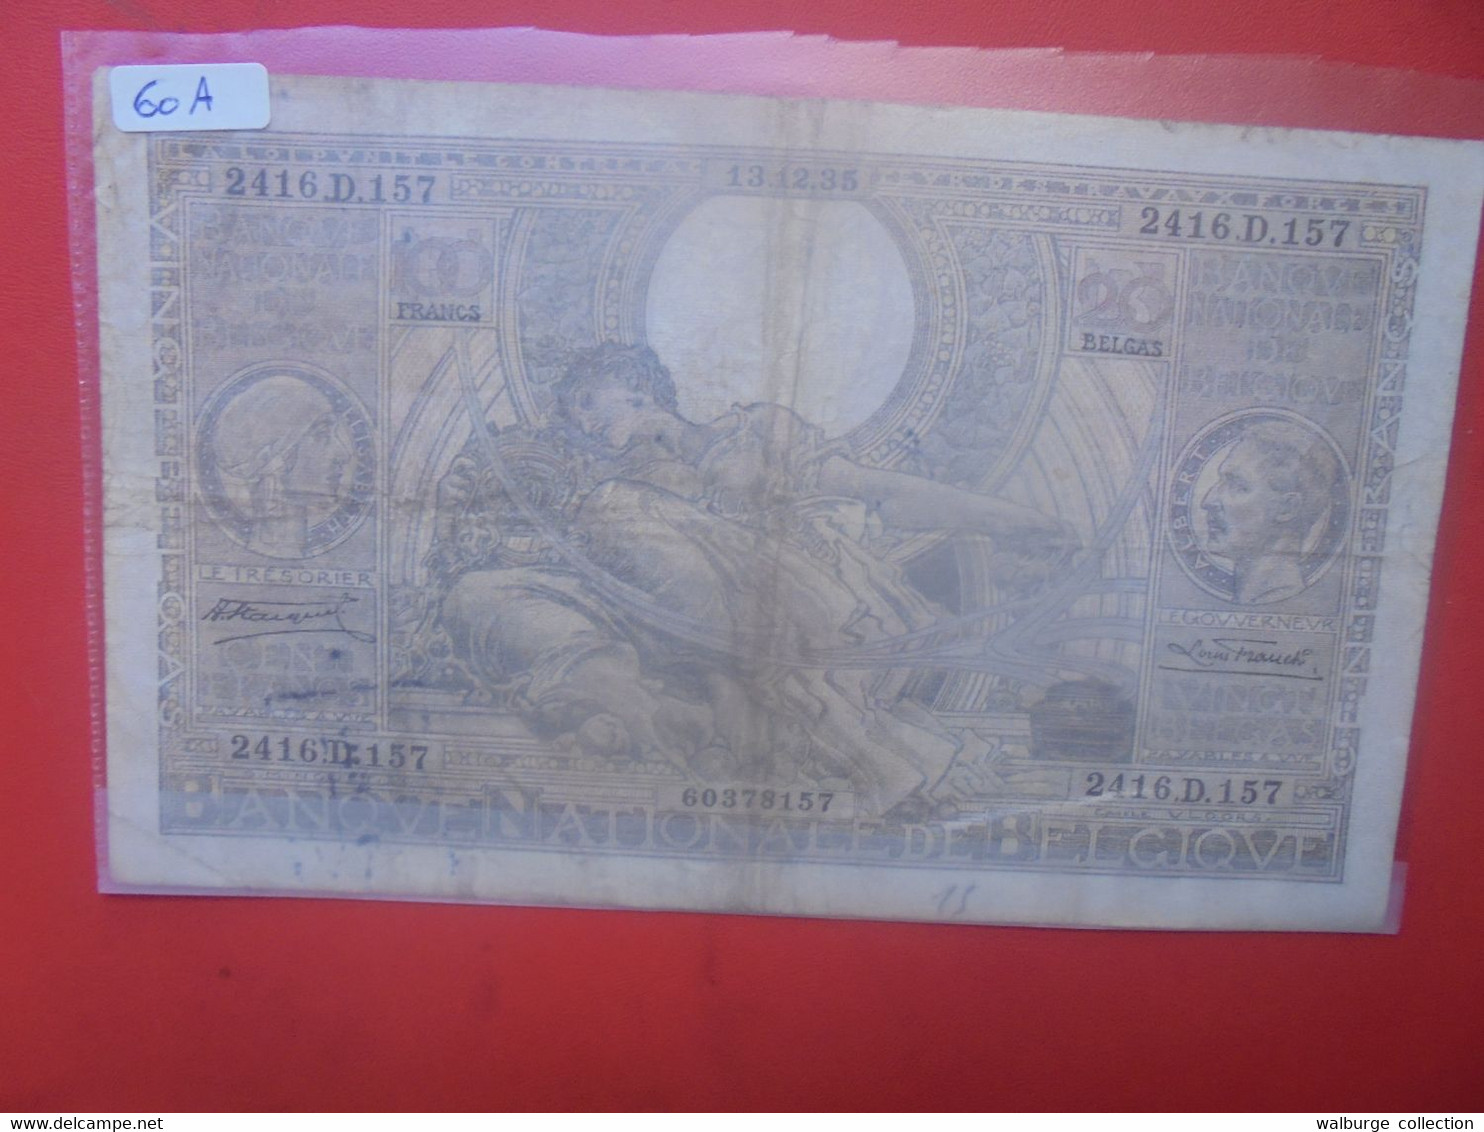 BELGIQUE 100 FRANCS 1935(Date+Rare) Circuler (B.27) - 100 Francs & 100 Francs-20 Belgas